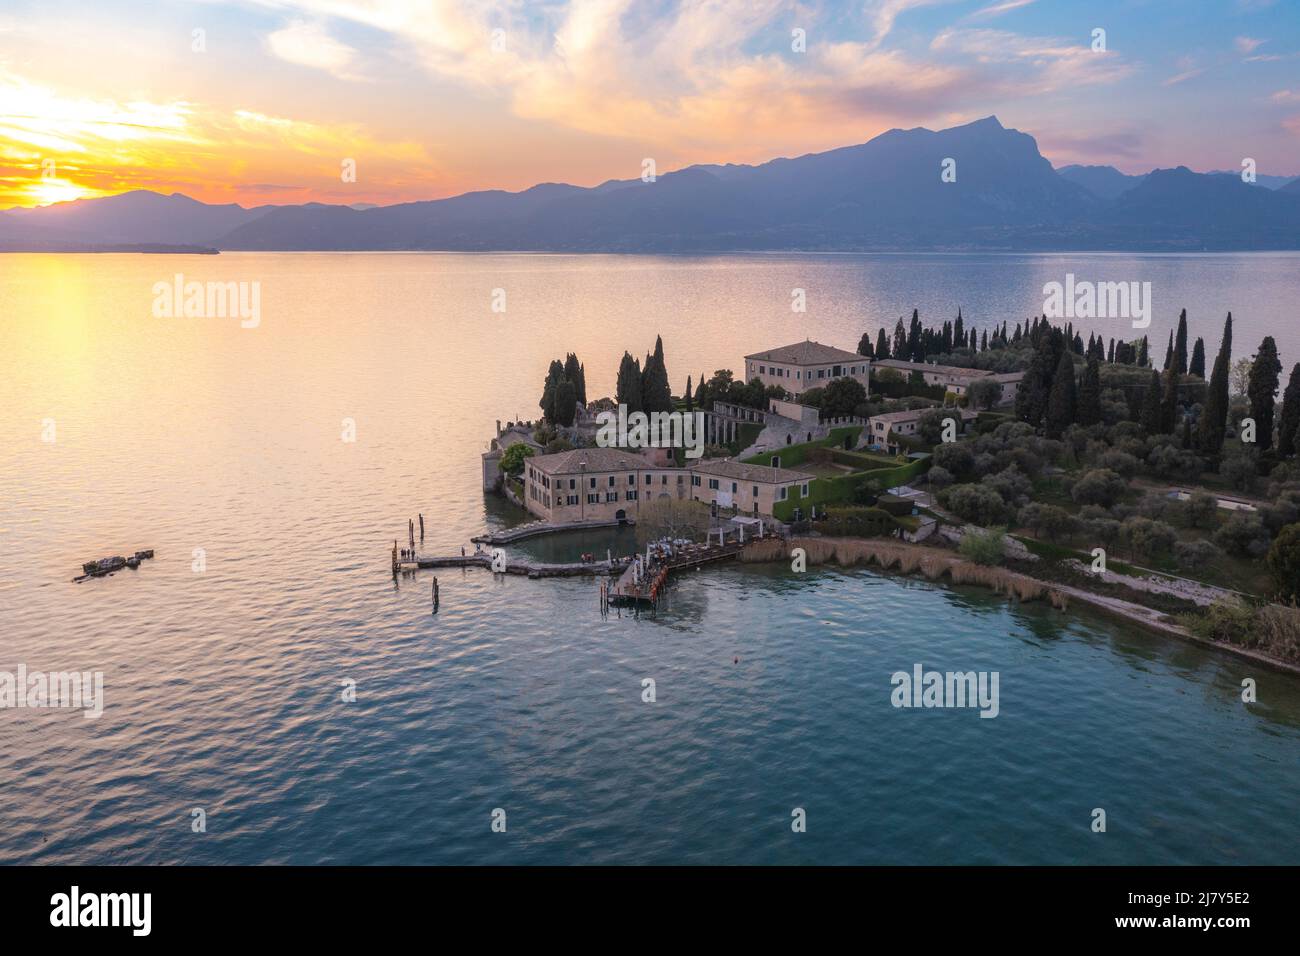 Punta San Vigilio, Garda Lake at sunset, aerial view. Italy Stock Photo